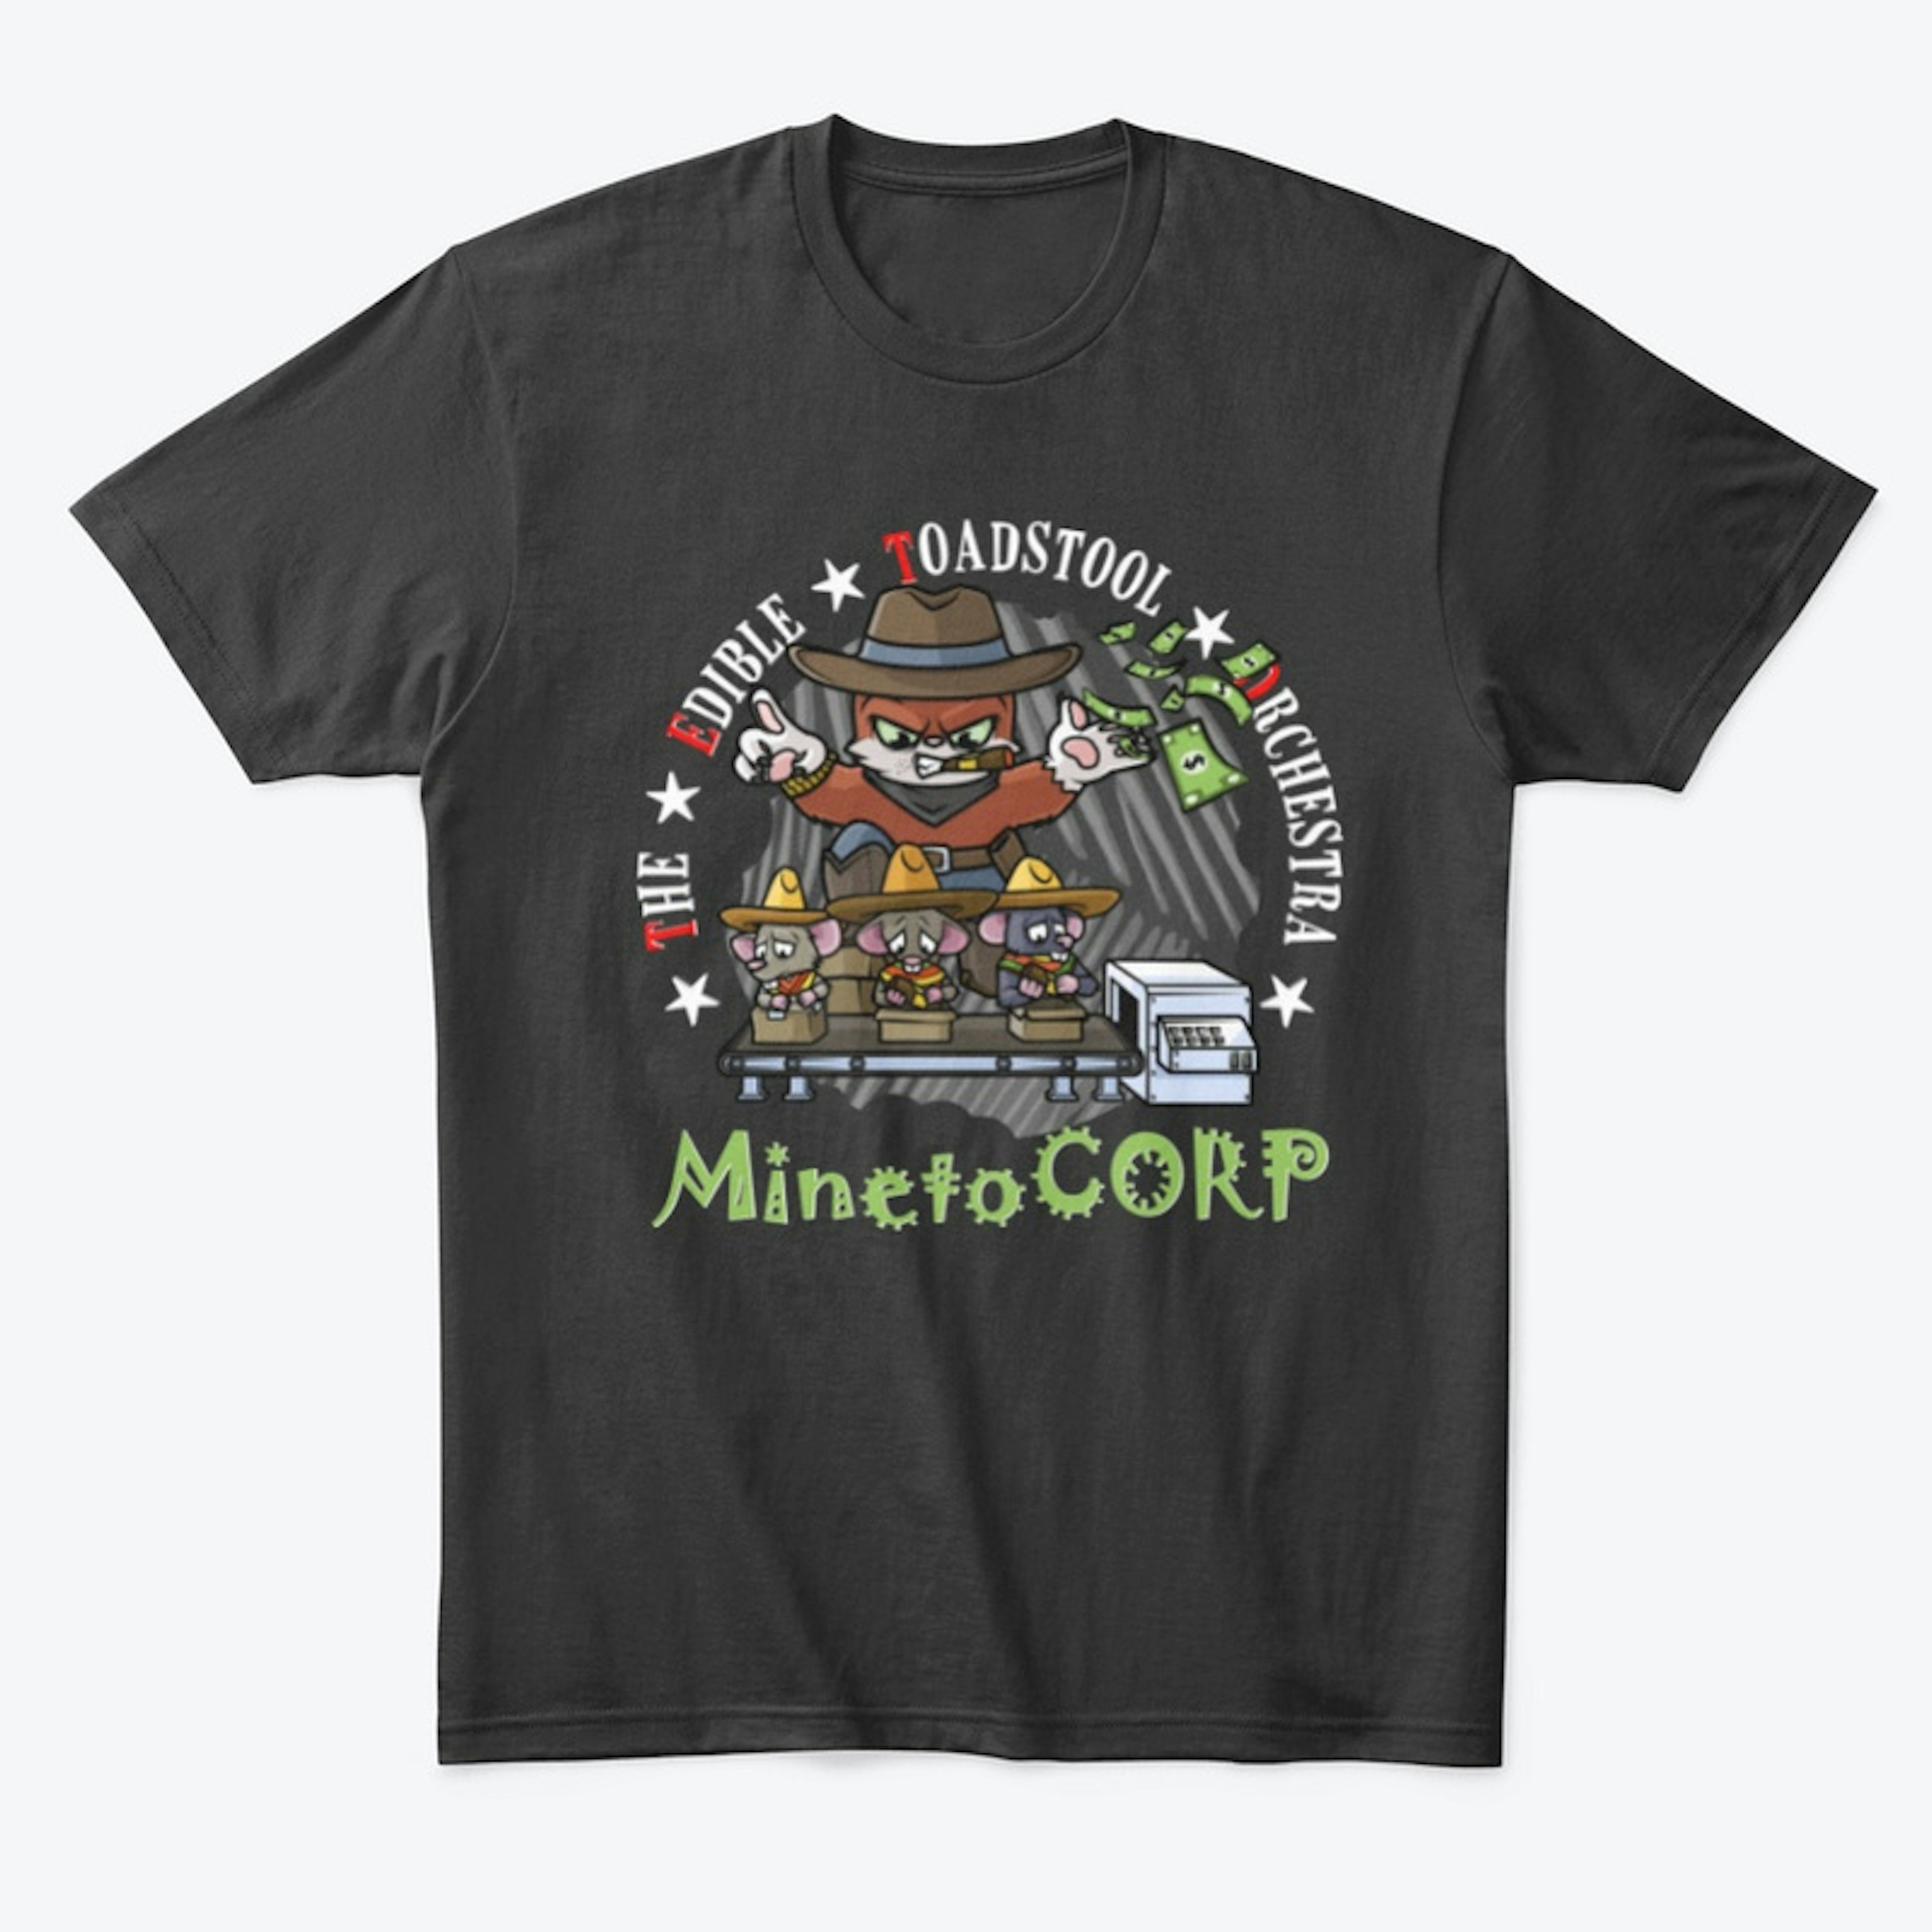 MINETOCORP - Man Shirt